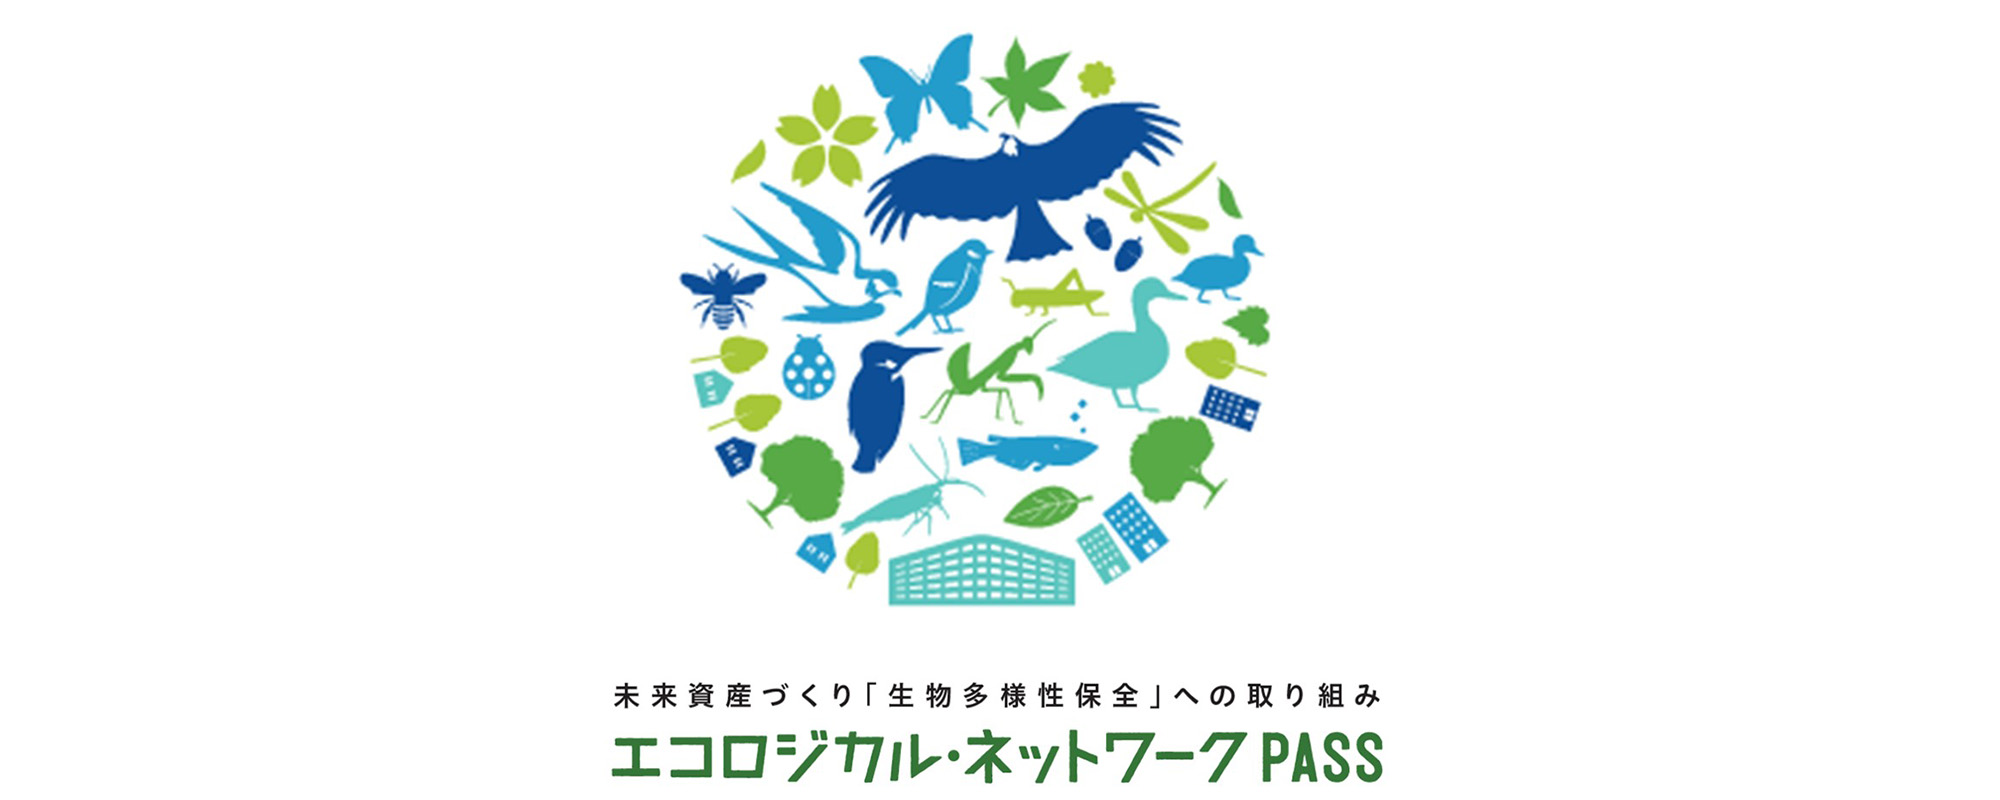 エコロジカル・ネットワークPASS ロゴ画像